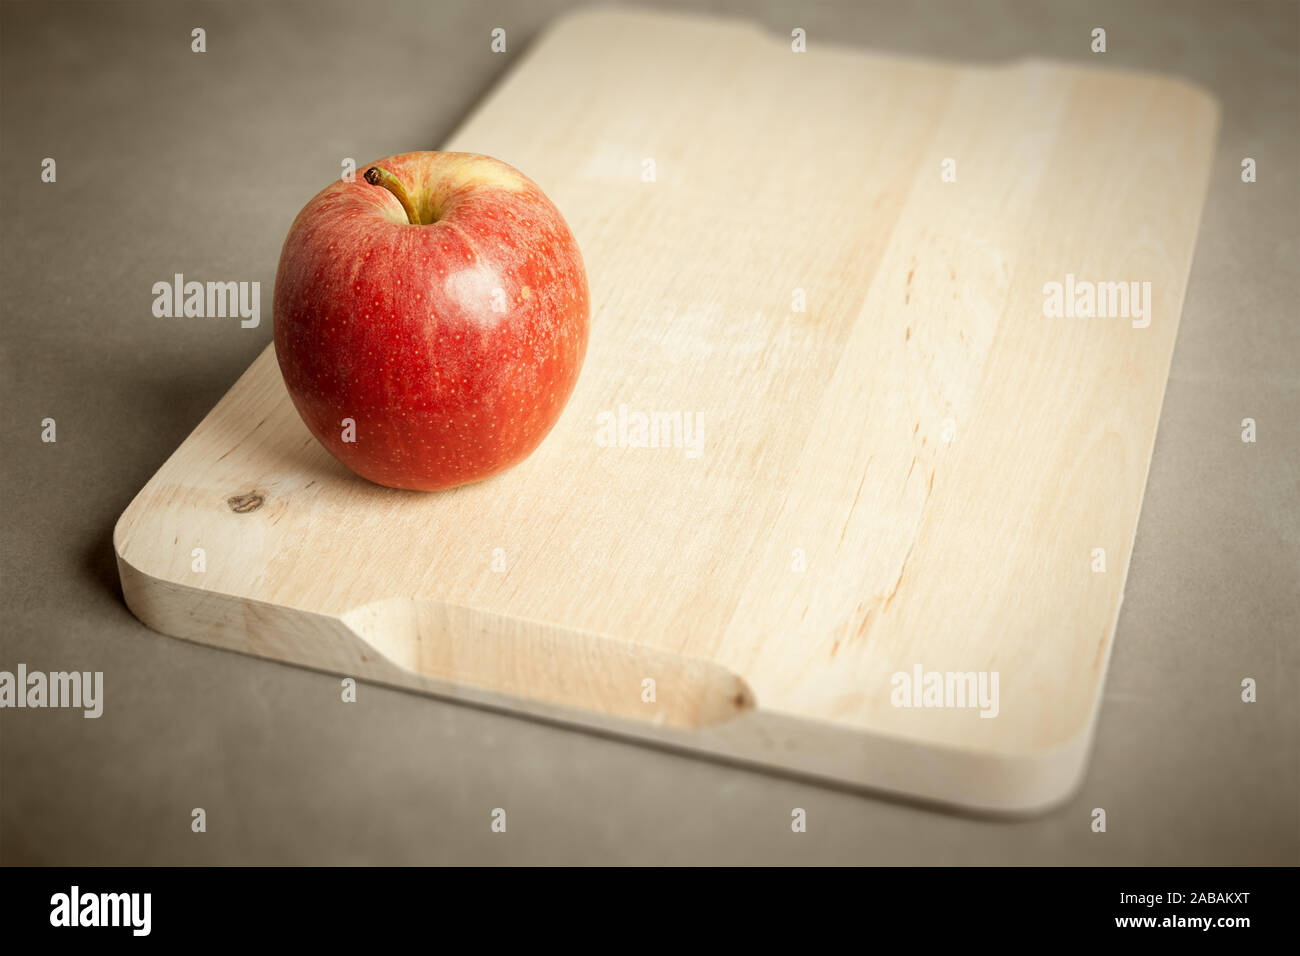 Ein roter Apfel auf einem hölzernen Schneidebrett Stock Photo